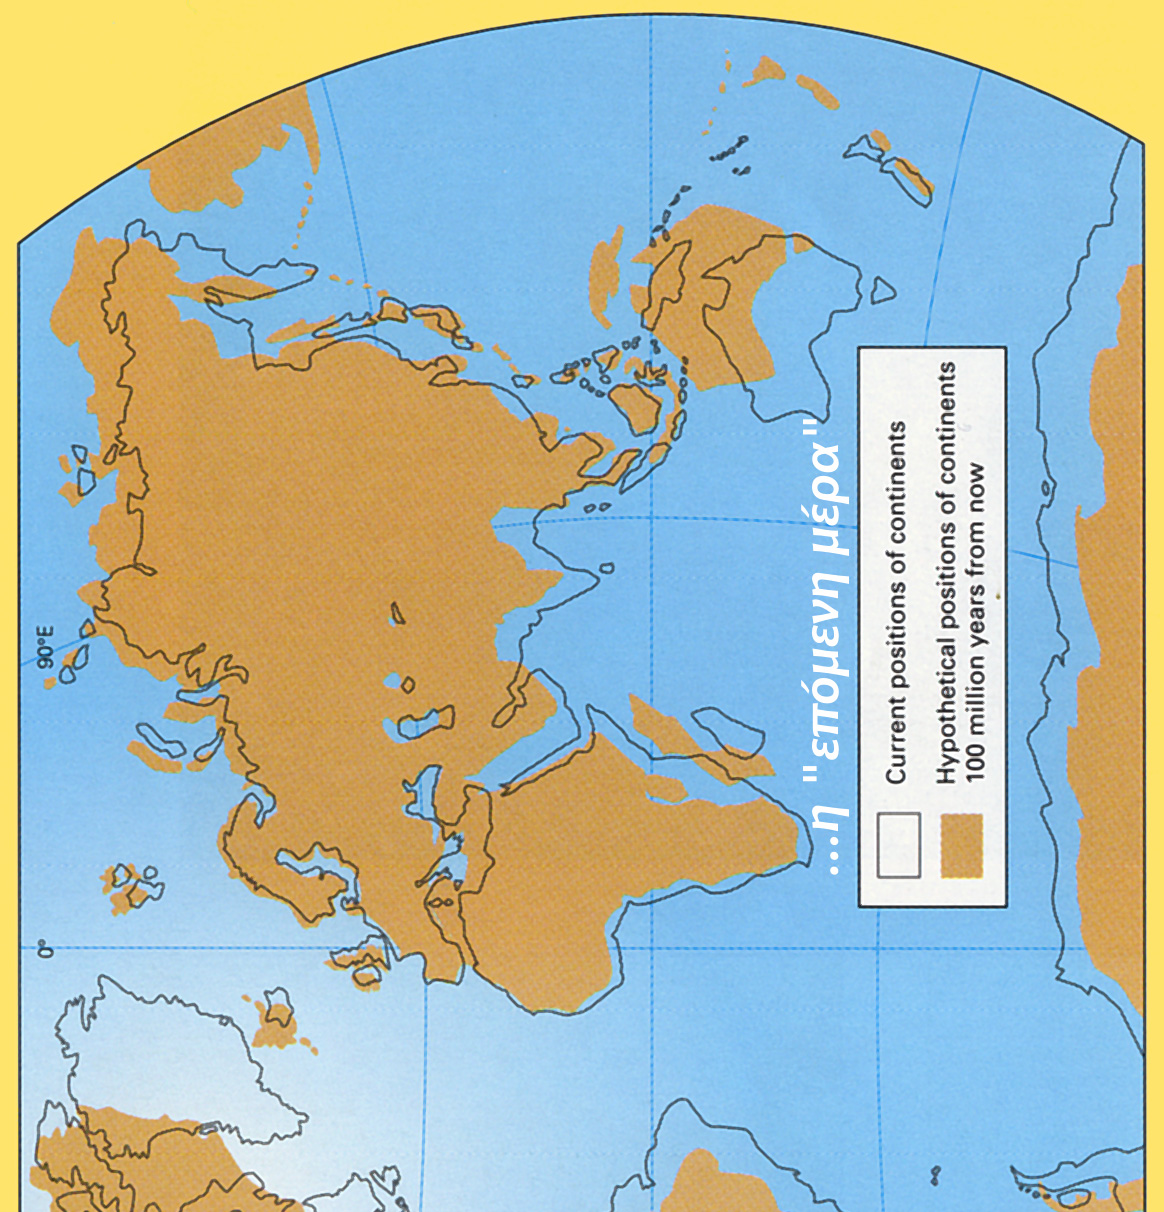 ρεια. Η Αυστραλία έχει εντελώς αποχωρισθεί από την Ανταρκτική. Περίπου το µισό του σηµερινού ωκεάνιου πυθµένα δηµιουργήθηκε την περίοδο αυτή. Στην Εικόνα 12.